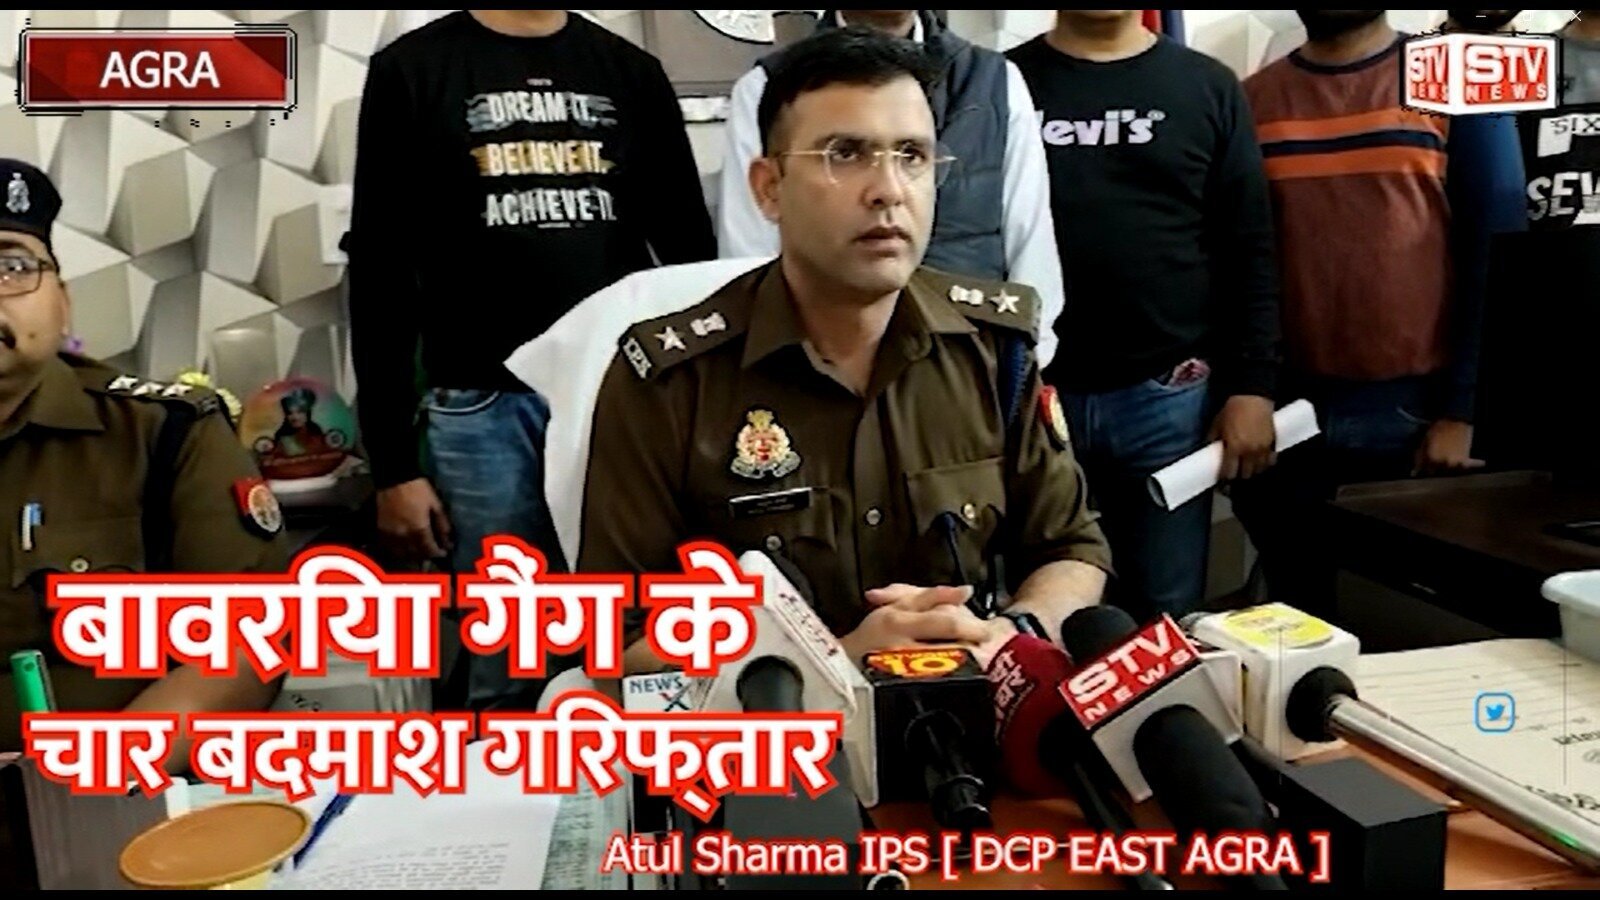 STV News | IPS Atul Sharma DCP EAST AGRA टीम को मिली सफलता पूजा अर्चना करने के बाद घटना को अंजाम देते थे